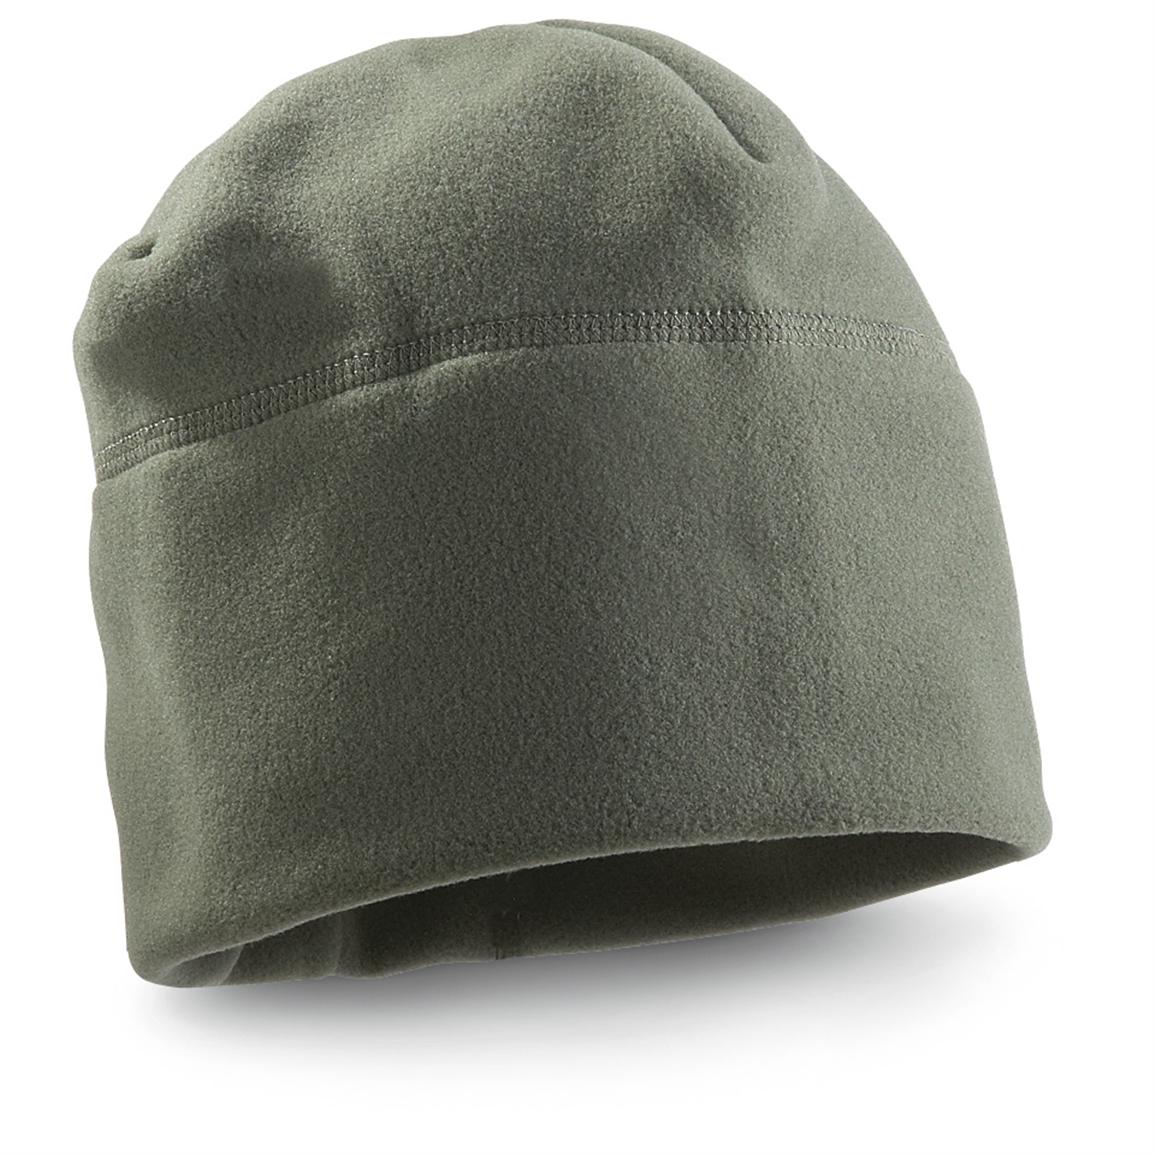 3 - Pk. of Polartec® Military - style Microfleece Caps, Foliage ...